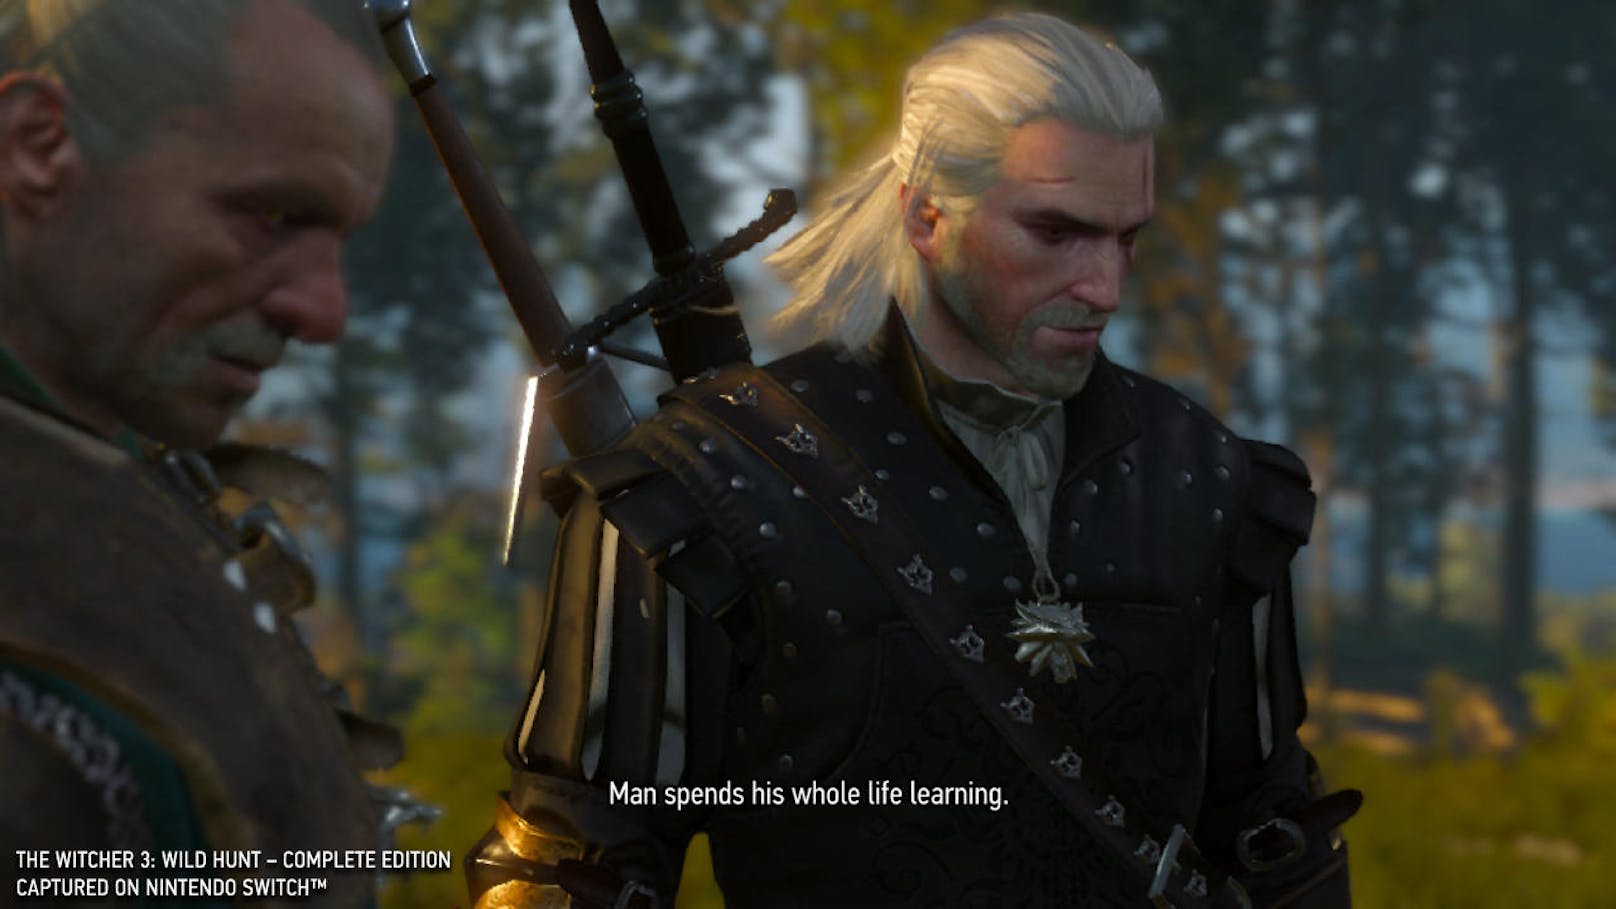 Der Monsterjäger Geralt von Riva ist zurück - aber nicht mit einem gänzlich neuen Spiel. Entwickler CD Projekt Red bringt mit The Witcher 3: Wild Hunt den krönenden Abschluss der Reihe auf Nintendo Switch.